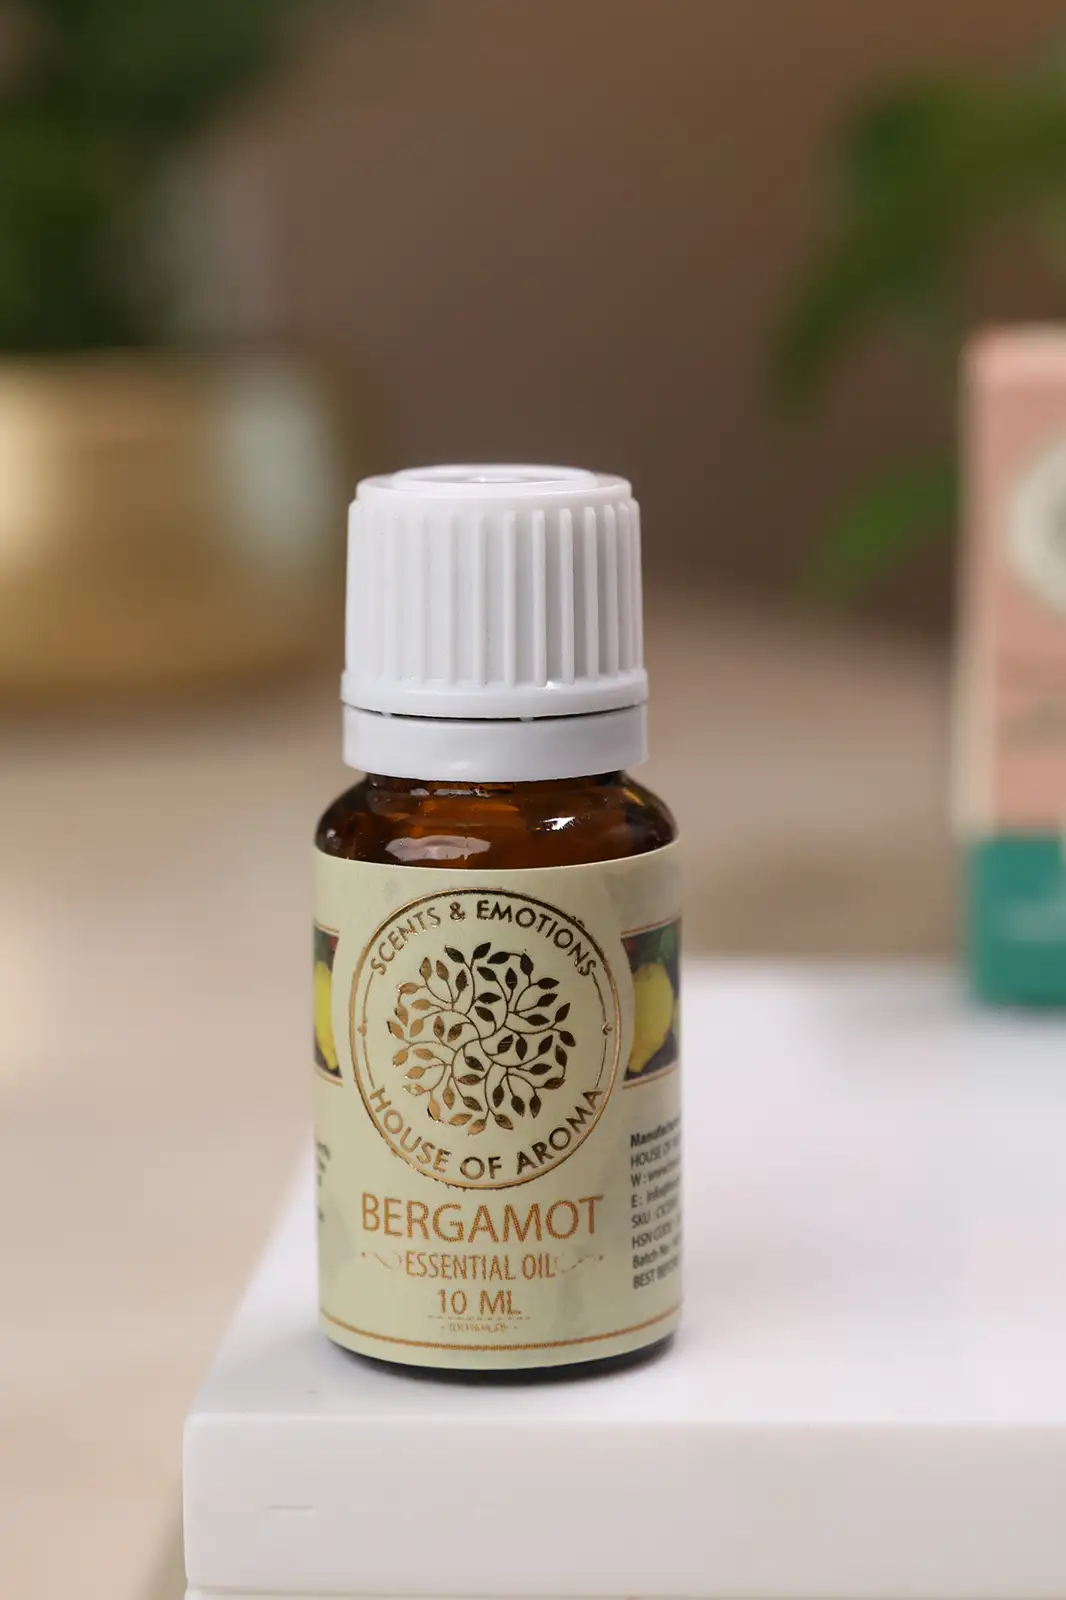 Buy Bergamot essential oil online, Bergamot essential oil benefits hair, bergamot oil for diffuser, bergamot essential oil benefits for skin, organic bergamot oil, house of aroma